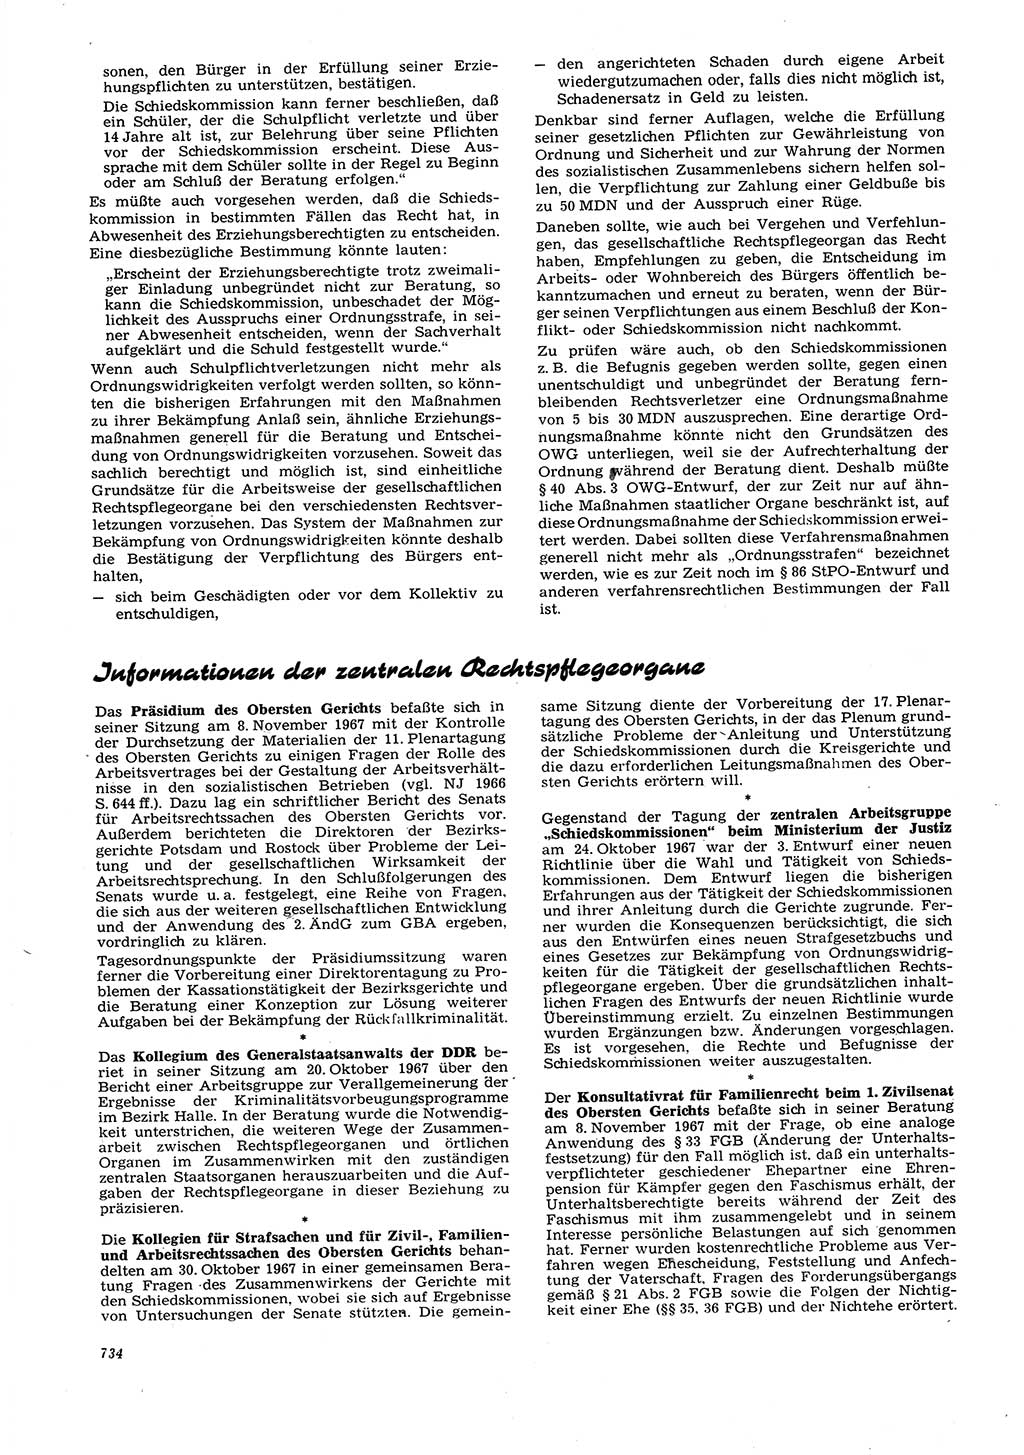 Neue Justiz (NJ), Zeitschrift für Recht und Rechtswissenschaft [Deutsche Demokratische Republik (DDR)], 21. Jahrgang 1967, Seite 734 (NJ DDR 1967, S. 734)